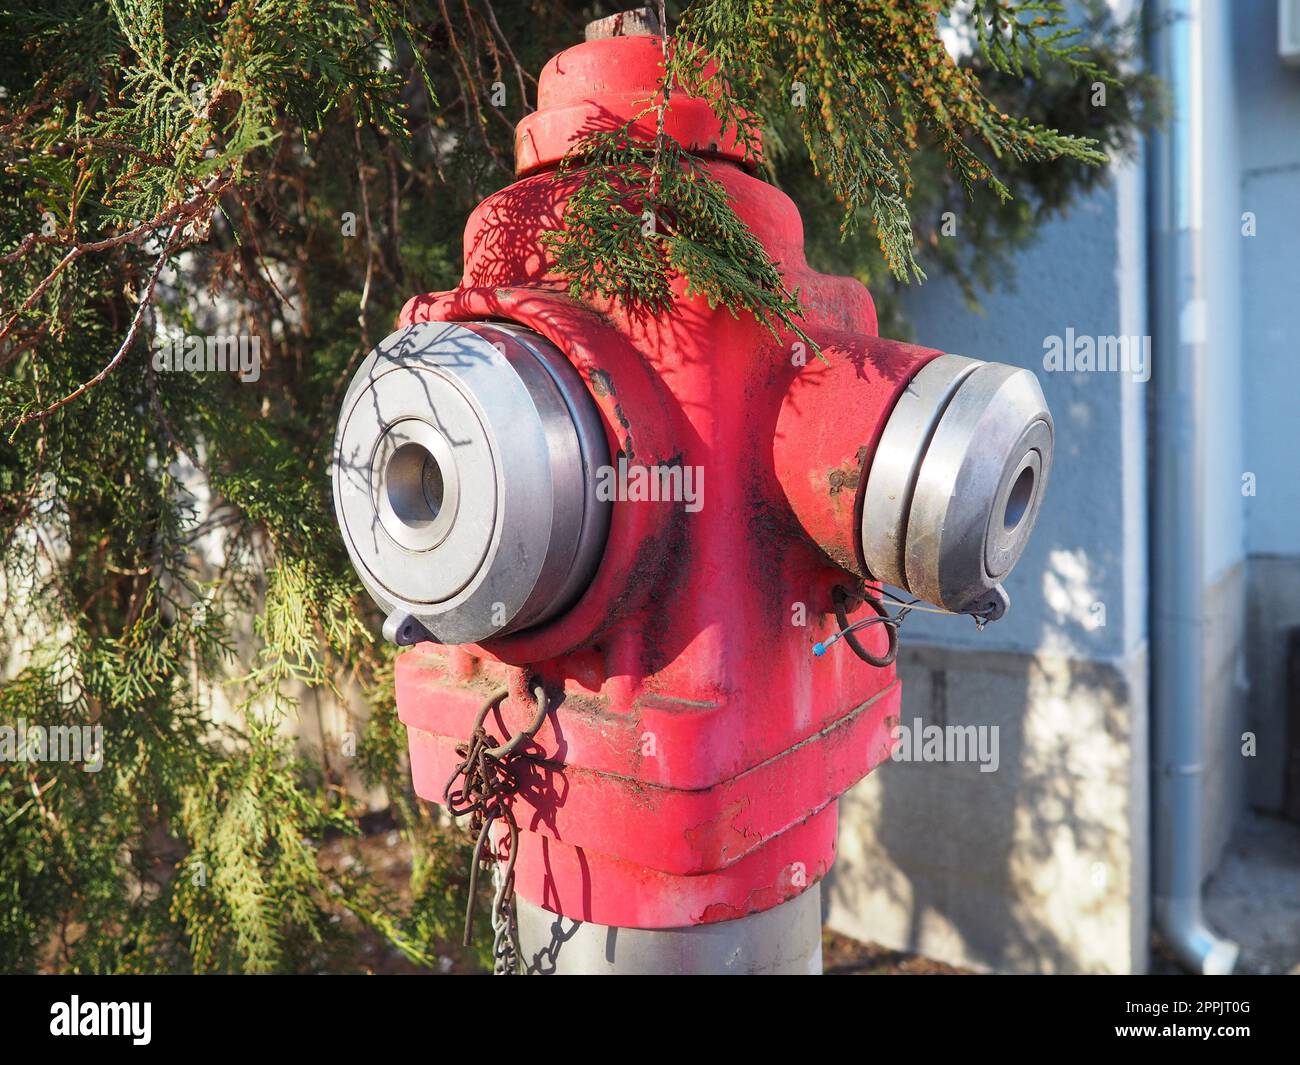 Hydrant Aussengeräte zum Löschen von Bränden in städtischen Umgebungen. Metall in kars-Farbe lackiert. Zwei Armaturen für Feuerlöschschläuche. Thuja bleibt im Hintergrund Stockfoto